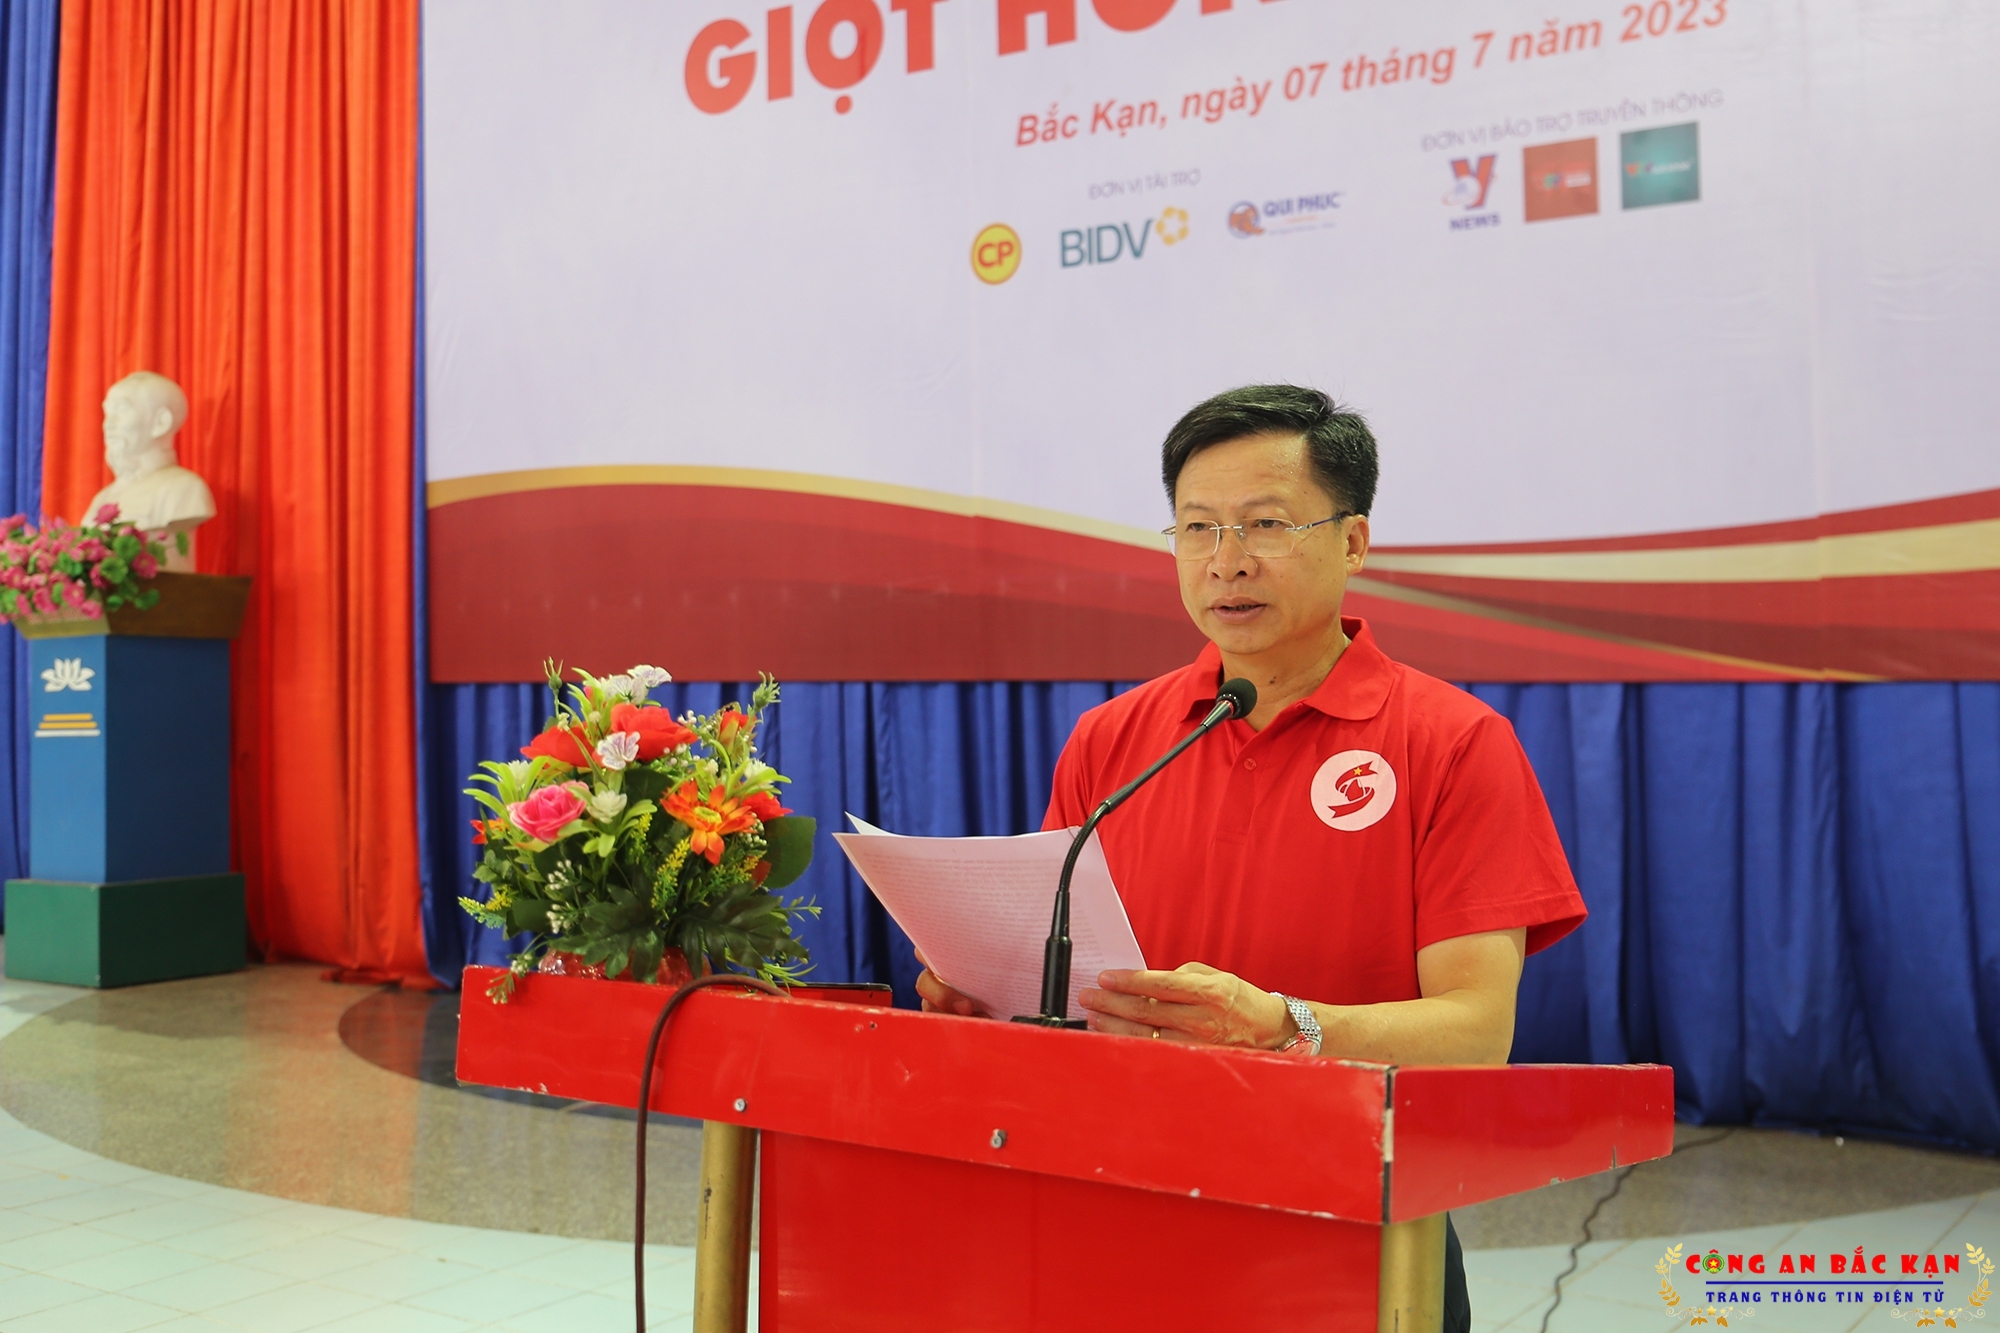 Chương trình Hành trình đỏ - kết nối dòng máu Việt năm 2023 tiếp nhận được hơn 1.000 đơn vị máu